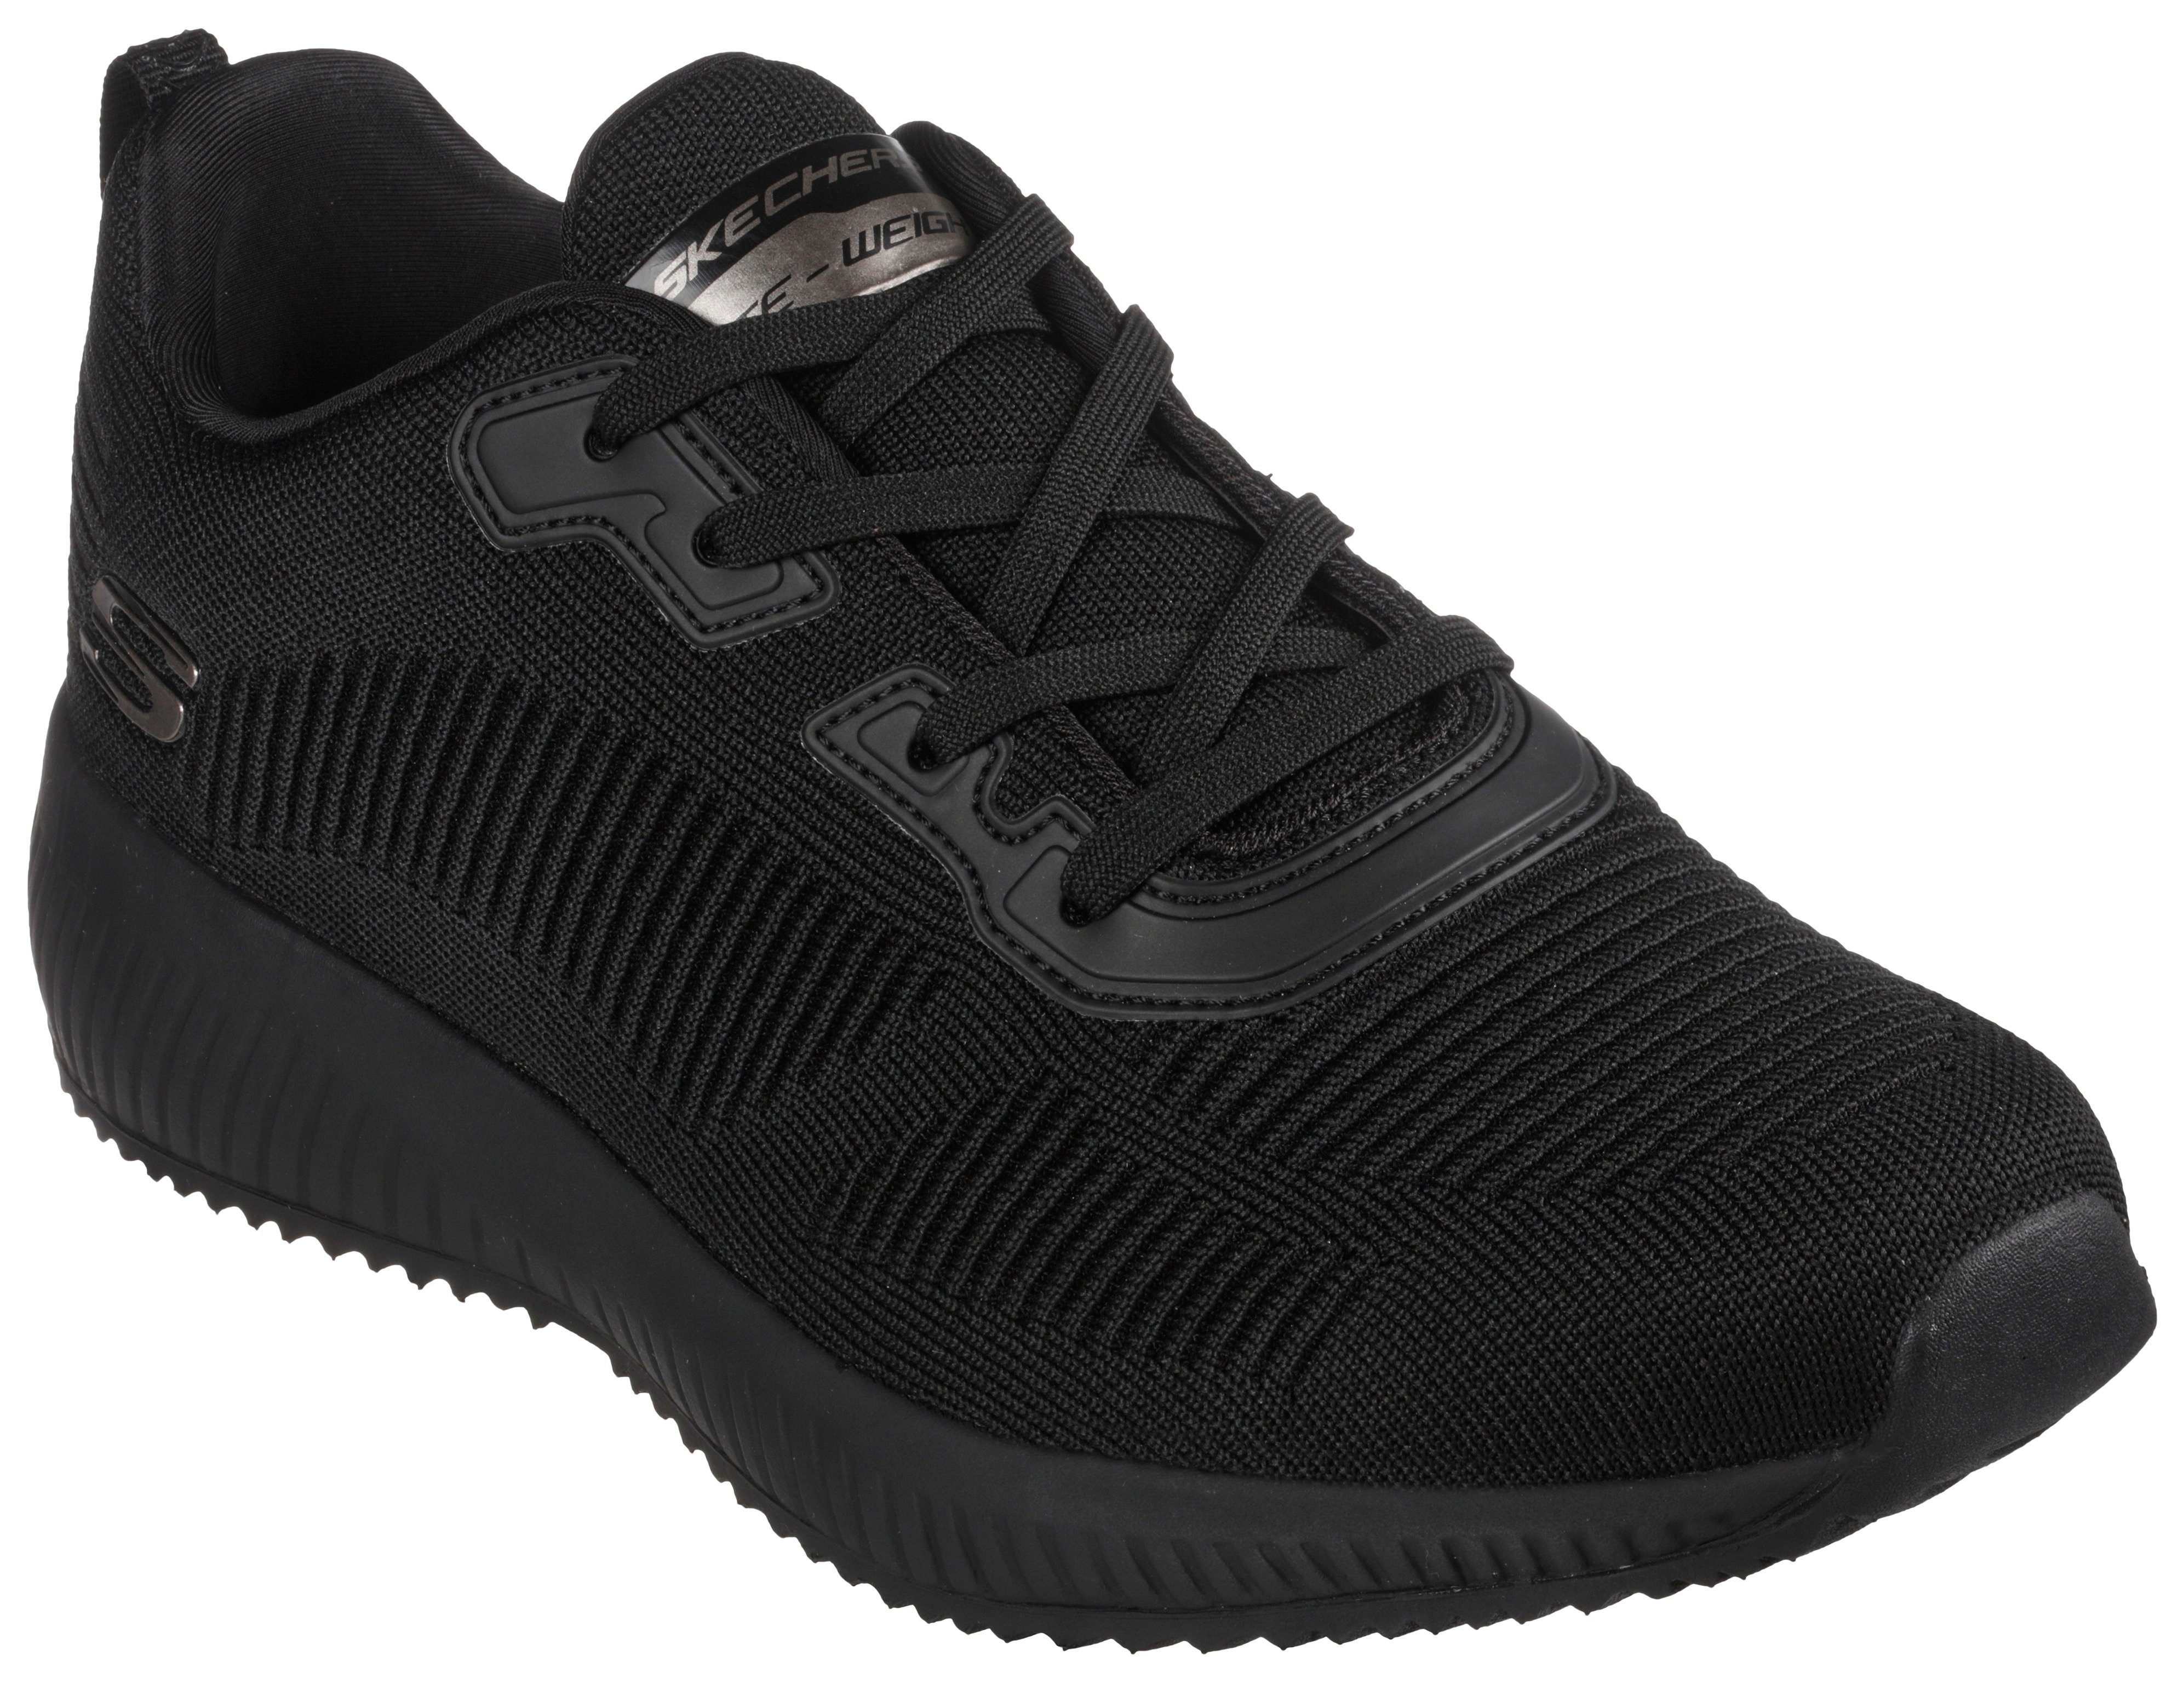 SQUAD SKECHERS geeignet Maschinenwäsche Sneaker für schwarz Skechers